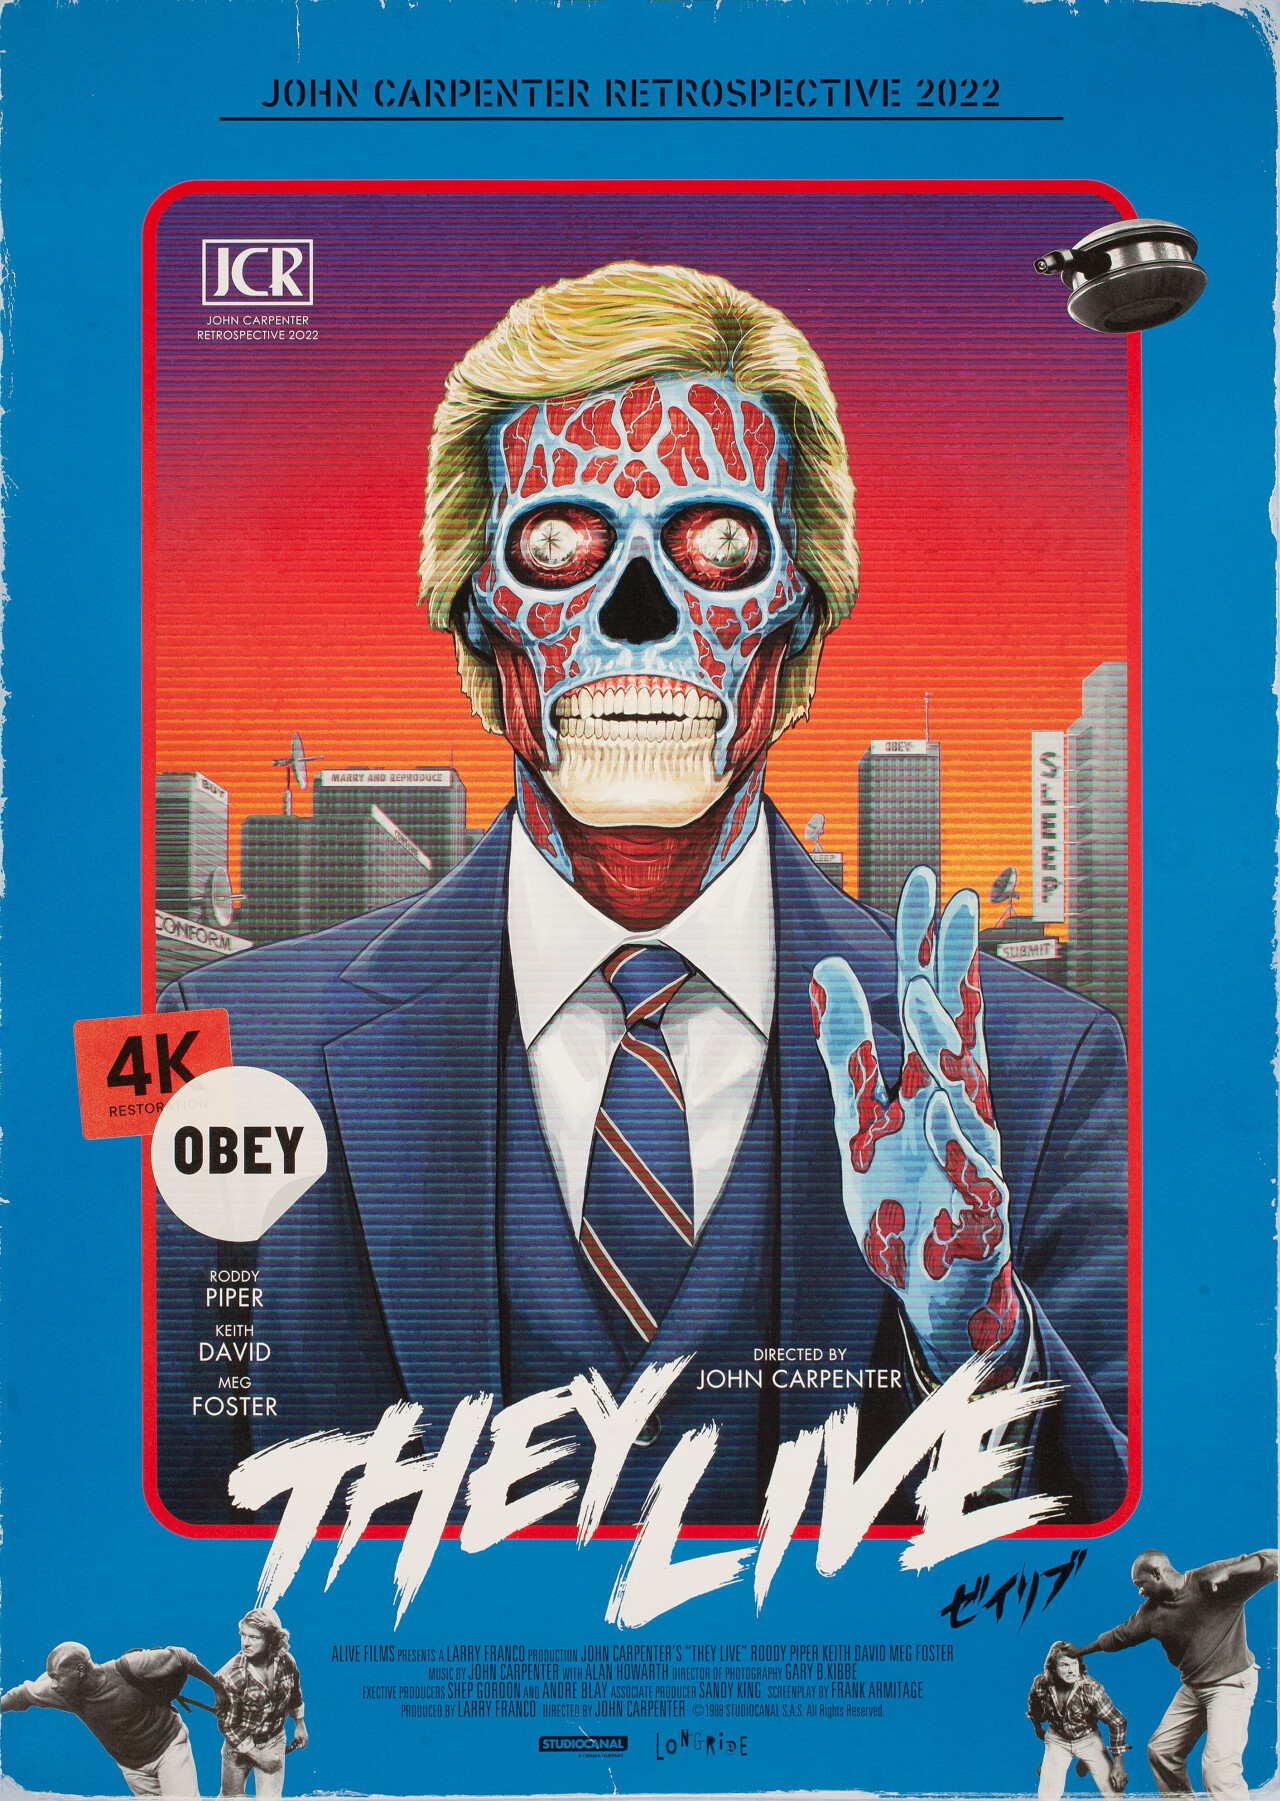 Чужие среди нас (They Live, 1988), режиссёр Джон Карпентер, японский постер к фильму, автор Юсуке Сайто, Идея Осима (ужасы, 2022 год)